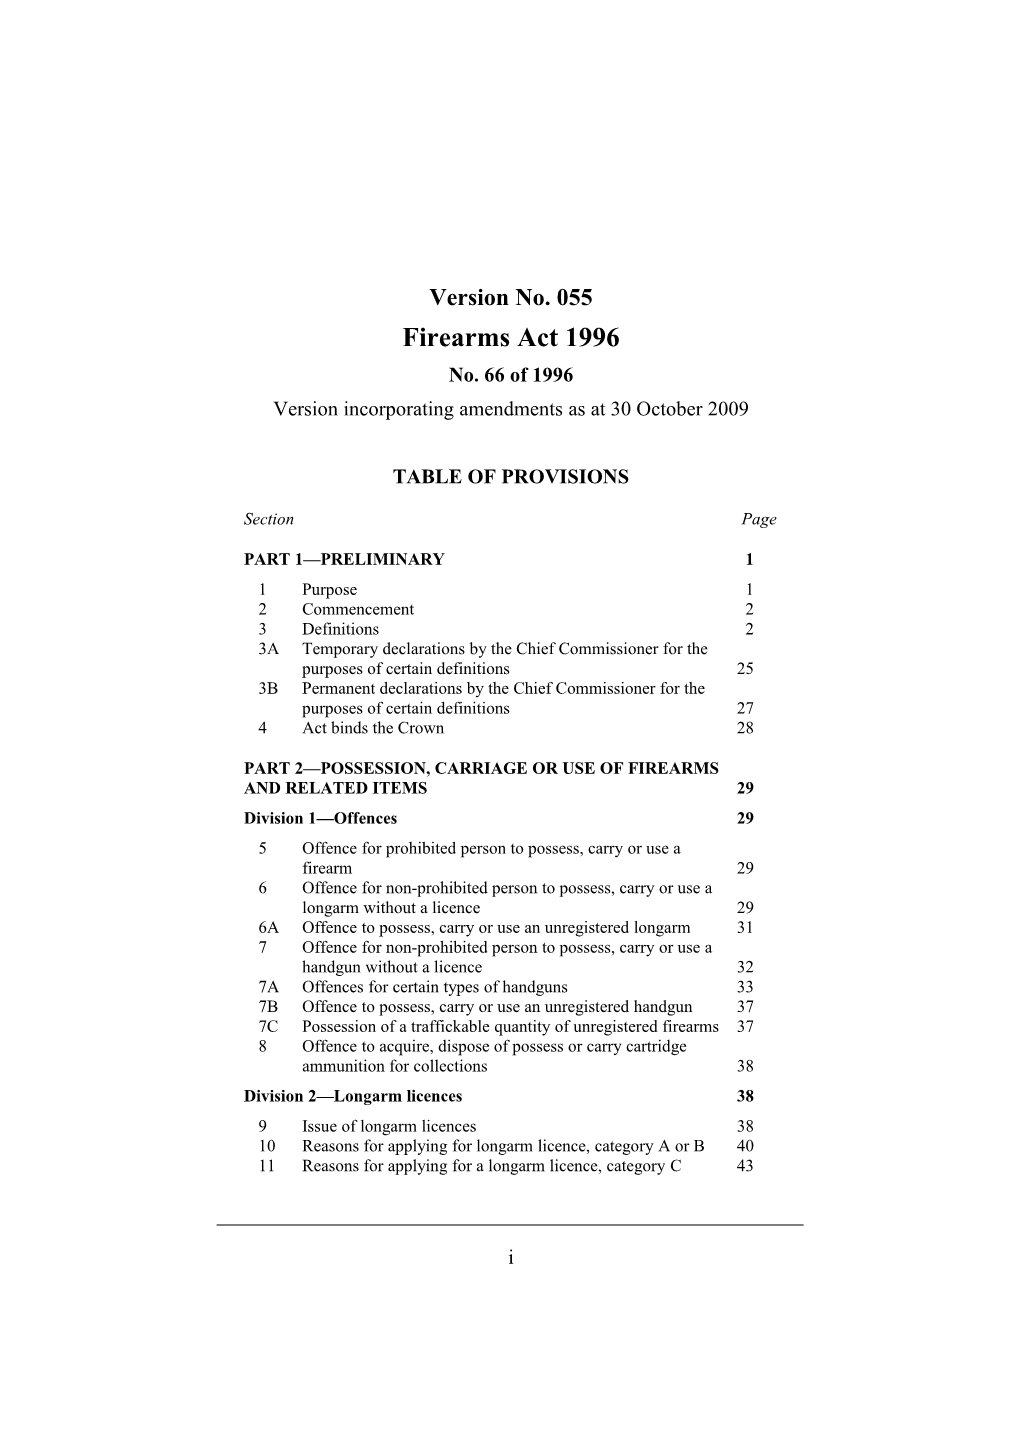 Version Incorporating Amendments As at 30 October 2009